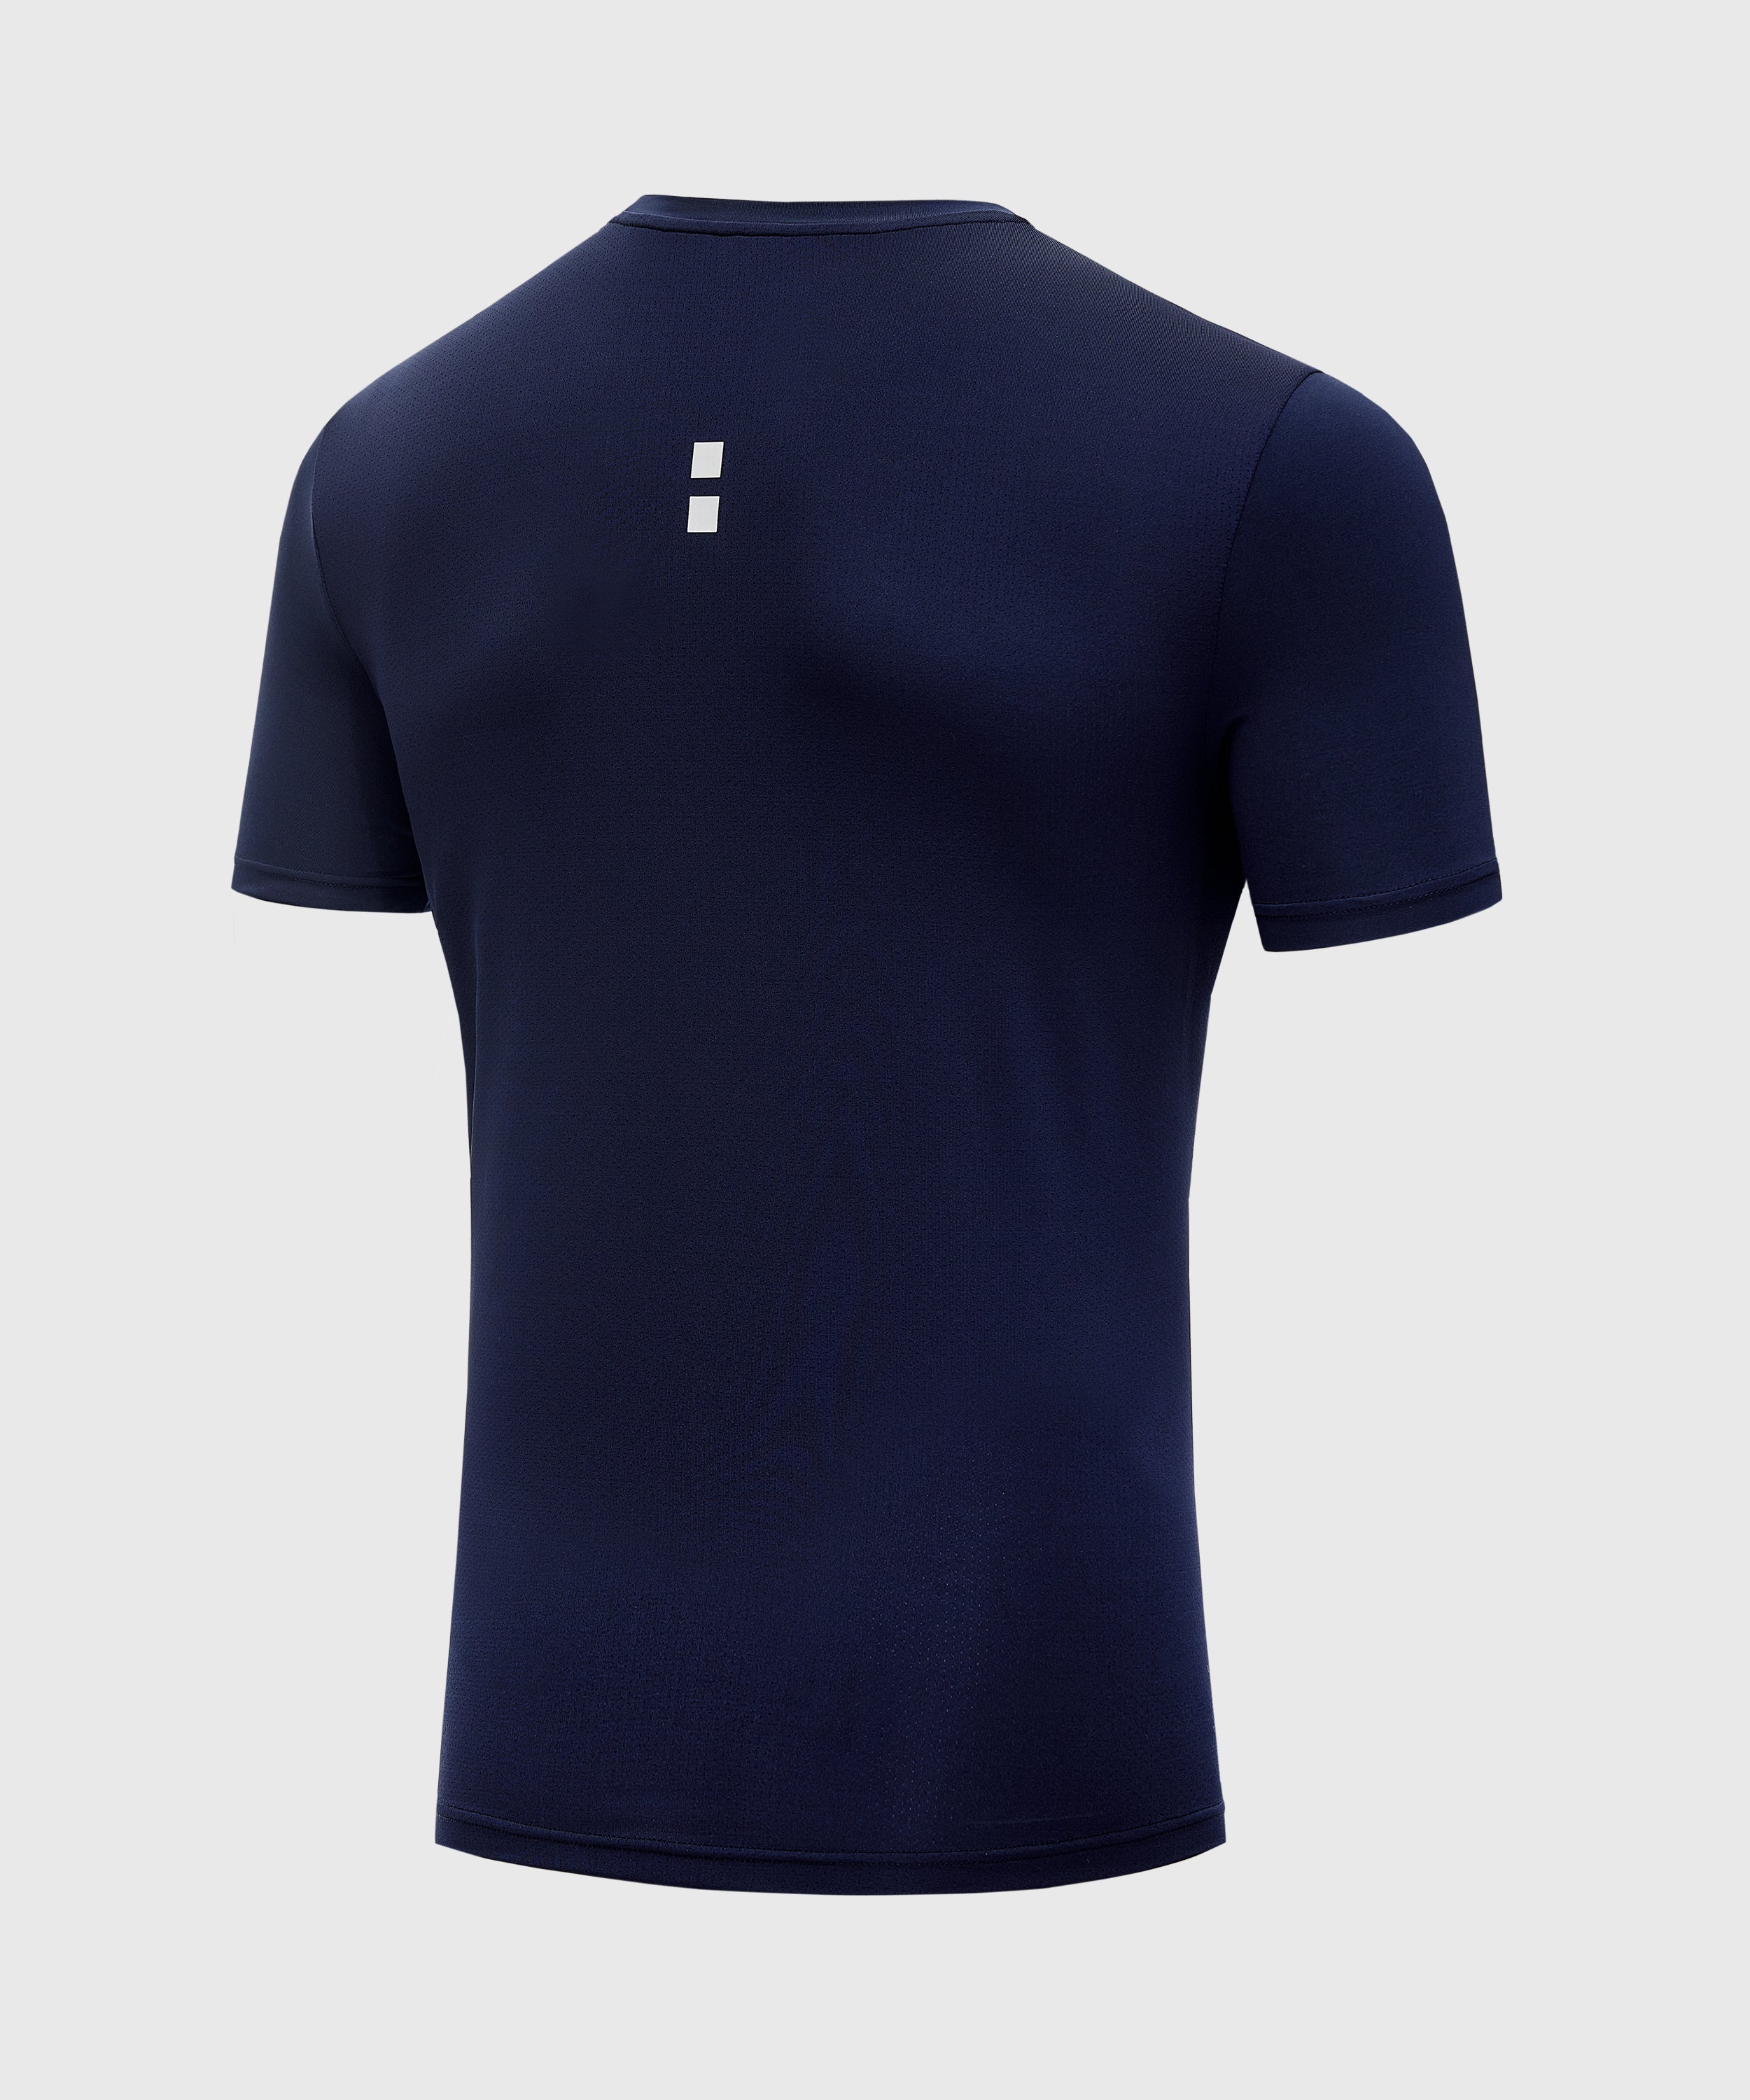 nordicdots tennis padel men's apparel navy t-shirt nordicdots.com